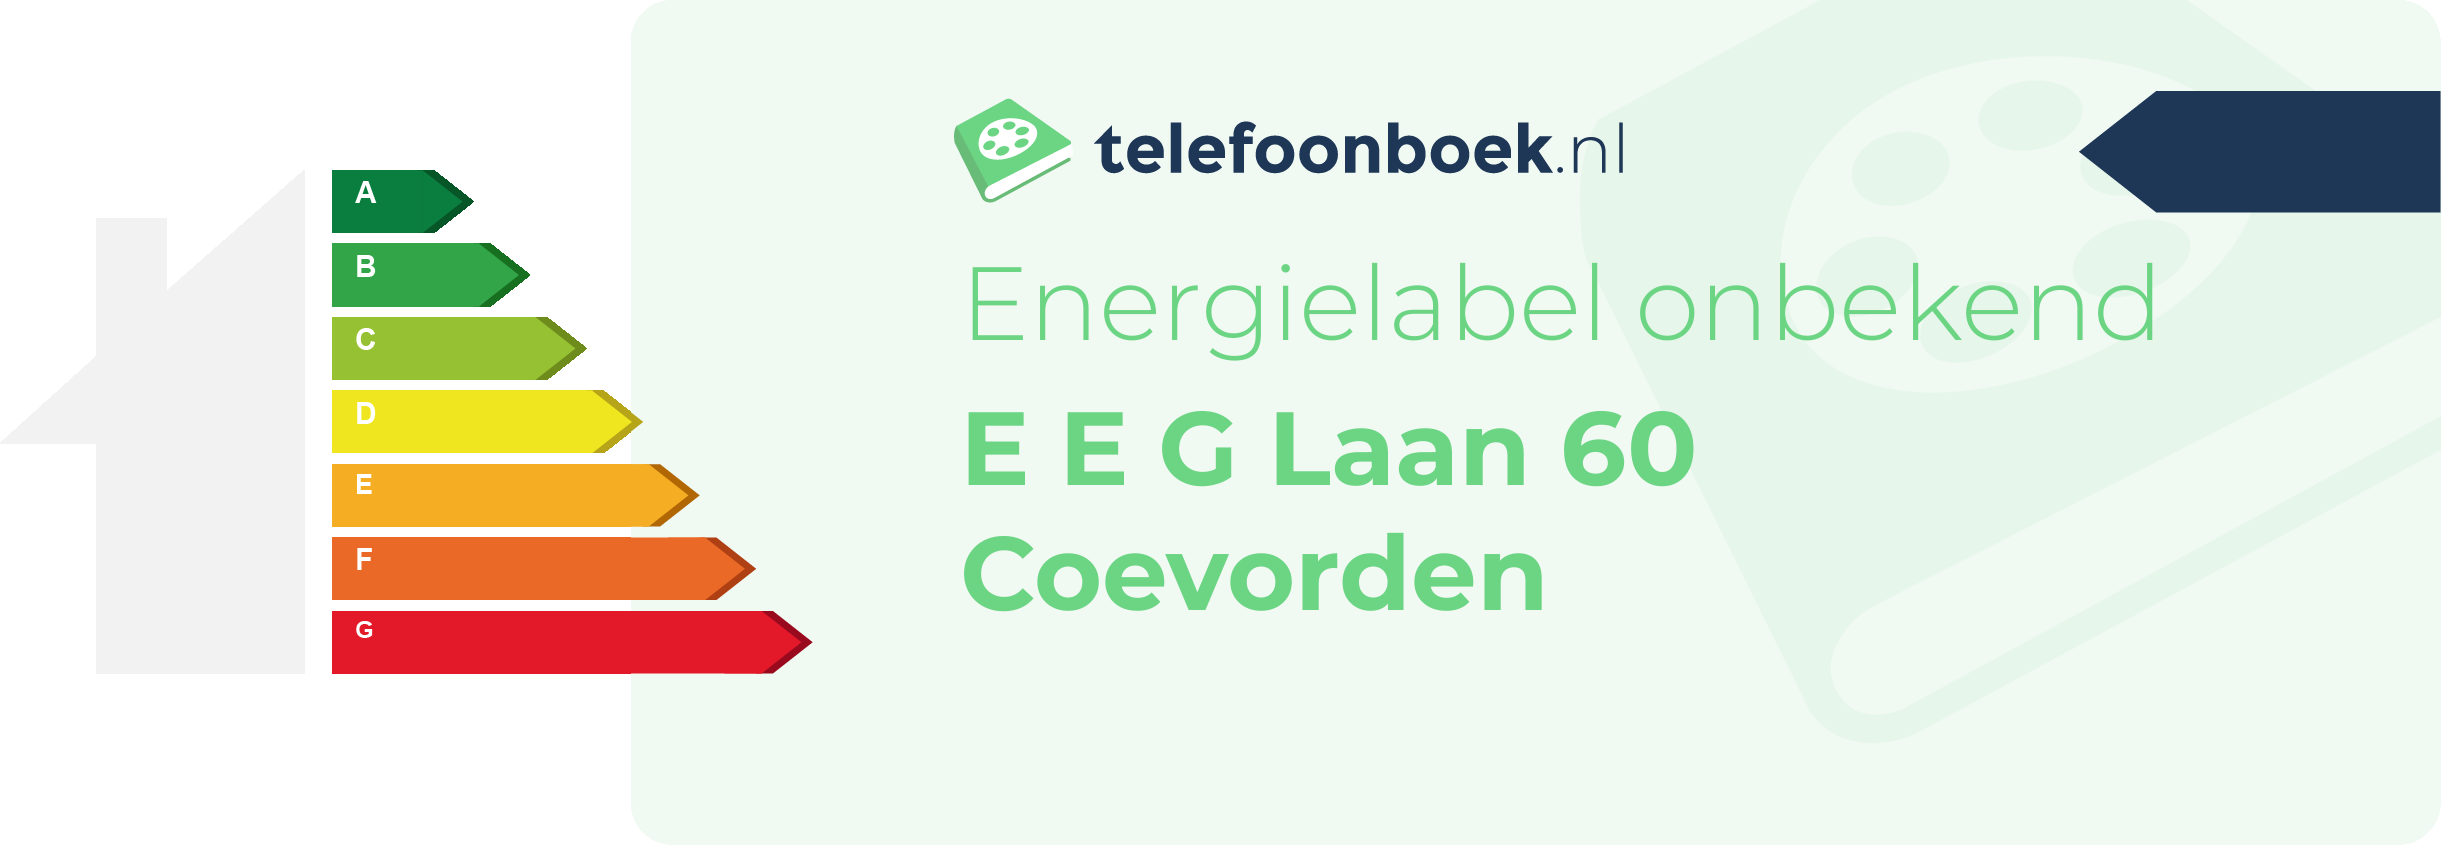 Energielabel E E G Laan 60 Coevorden